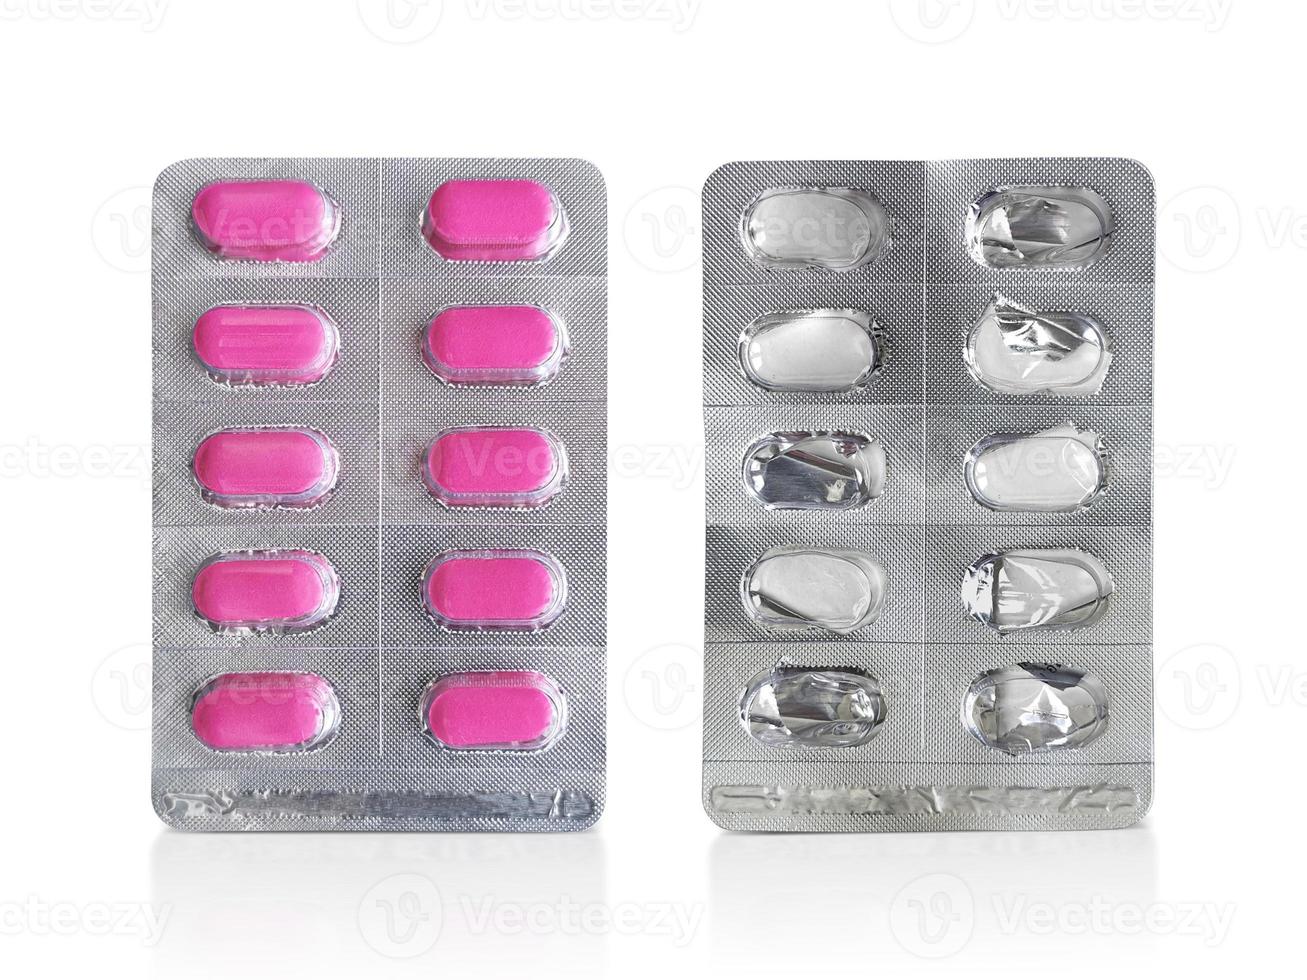 paquete de pastillas y pastillas usadas. concepto de farmacia y medicina foto